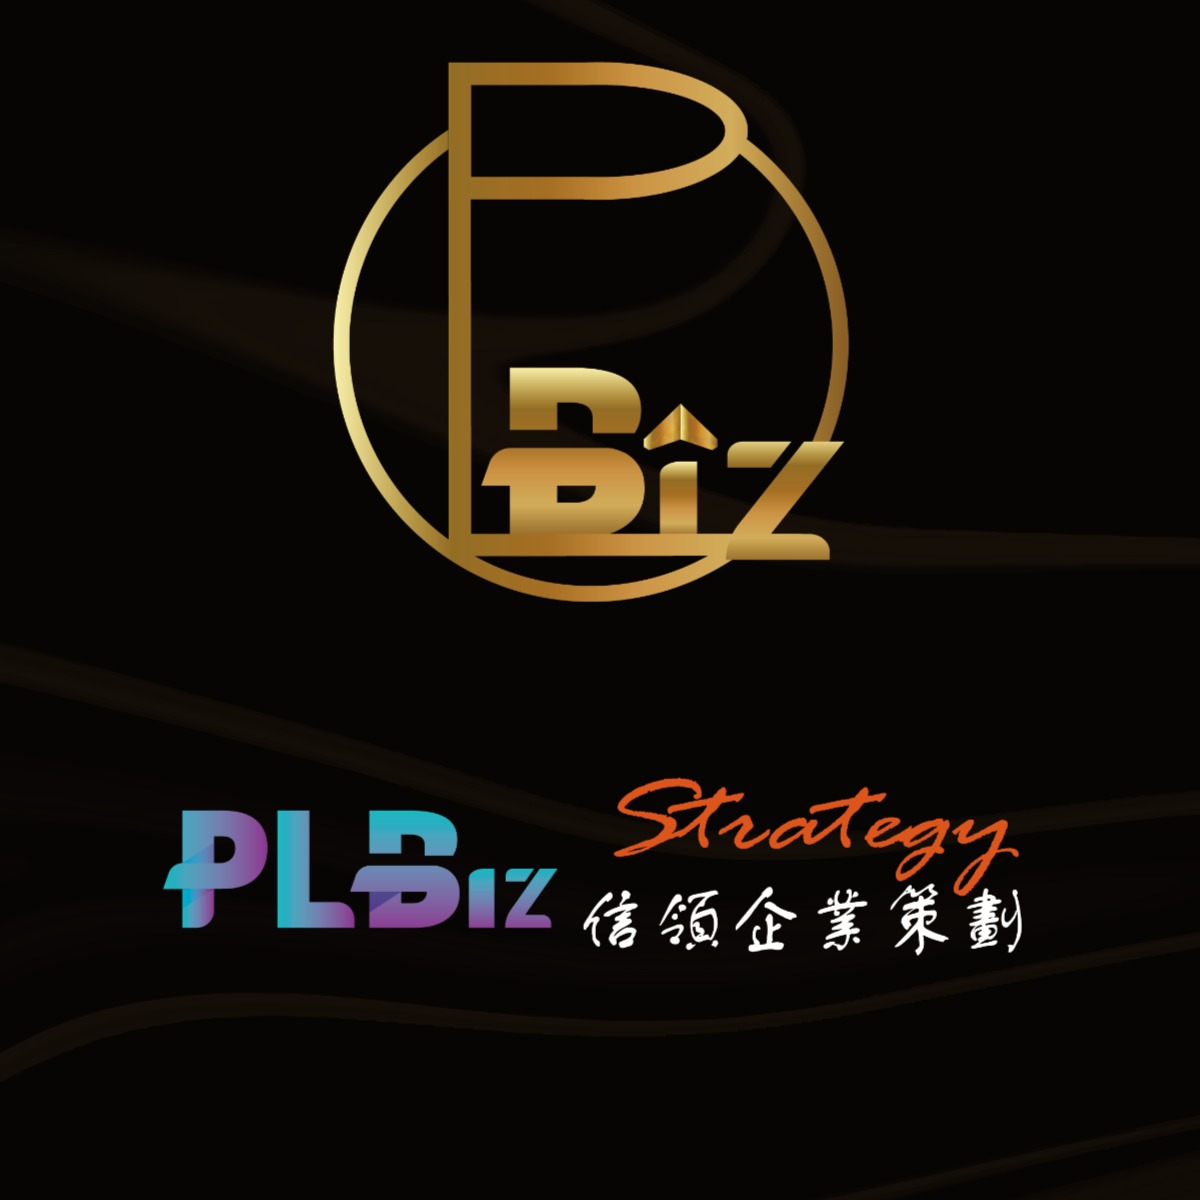 PL Biz Strategy 信領企業策劃